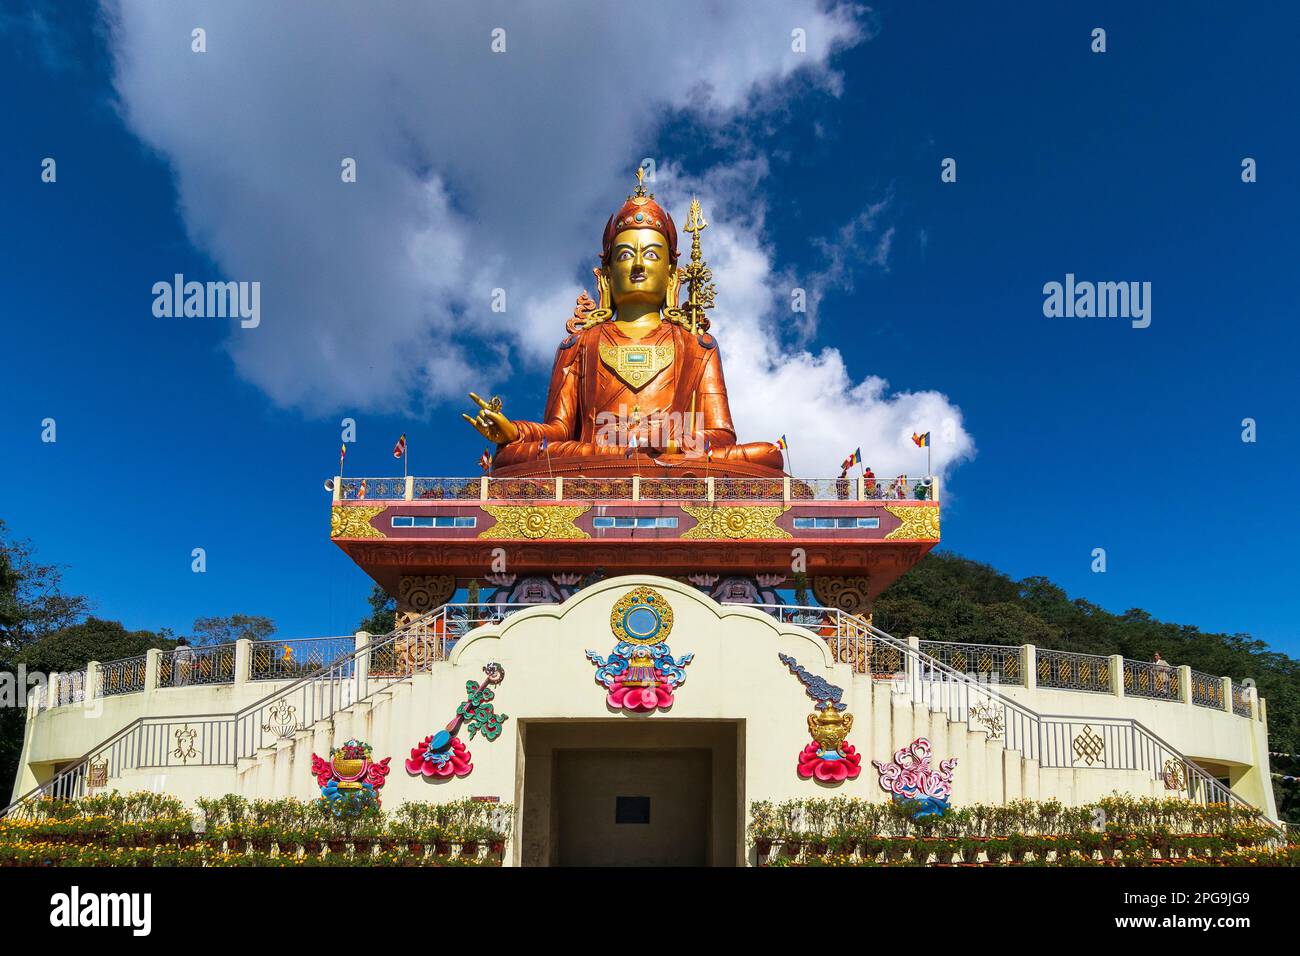 La Sainte statue de Guru Padmasambhava ou née d'un lotus, Guru Rinpoché, était un maître bouddhiste indien tantrique Vajra qui enseignait Vajrayana au Tibet. Bleu Banque D'Images